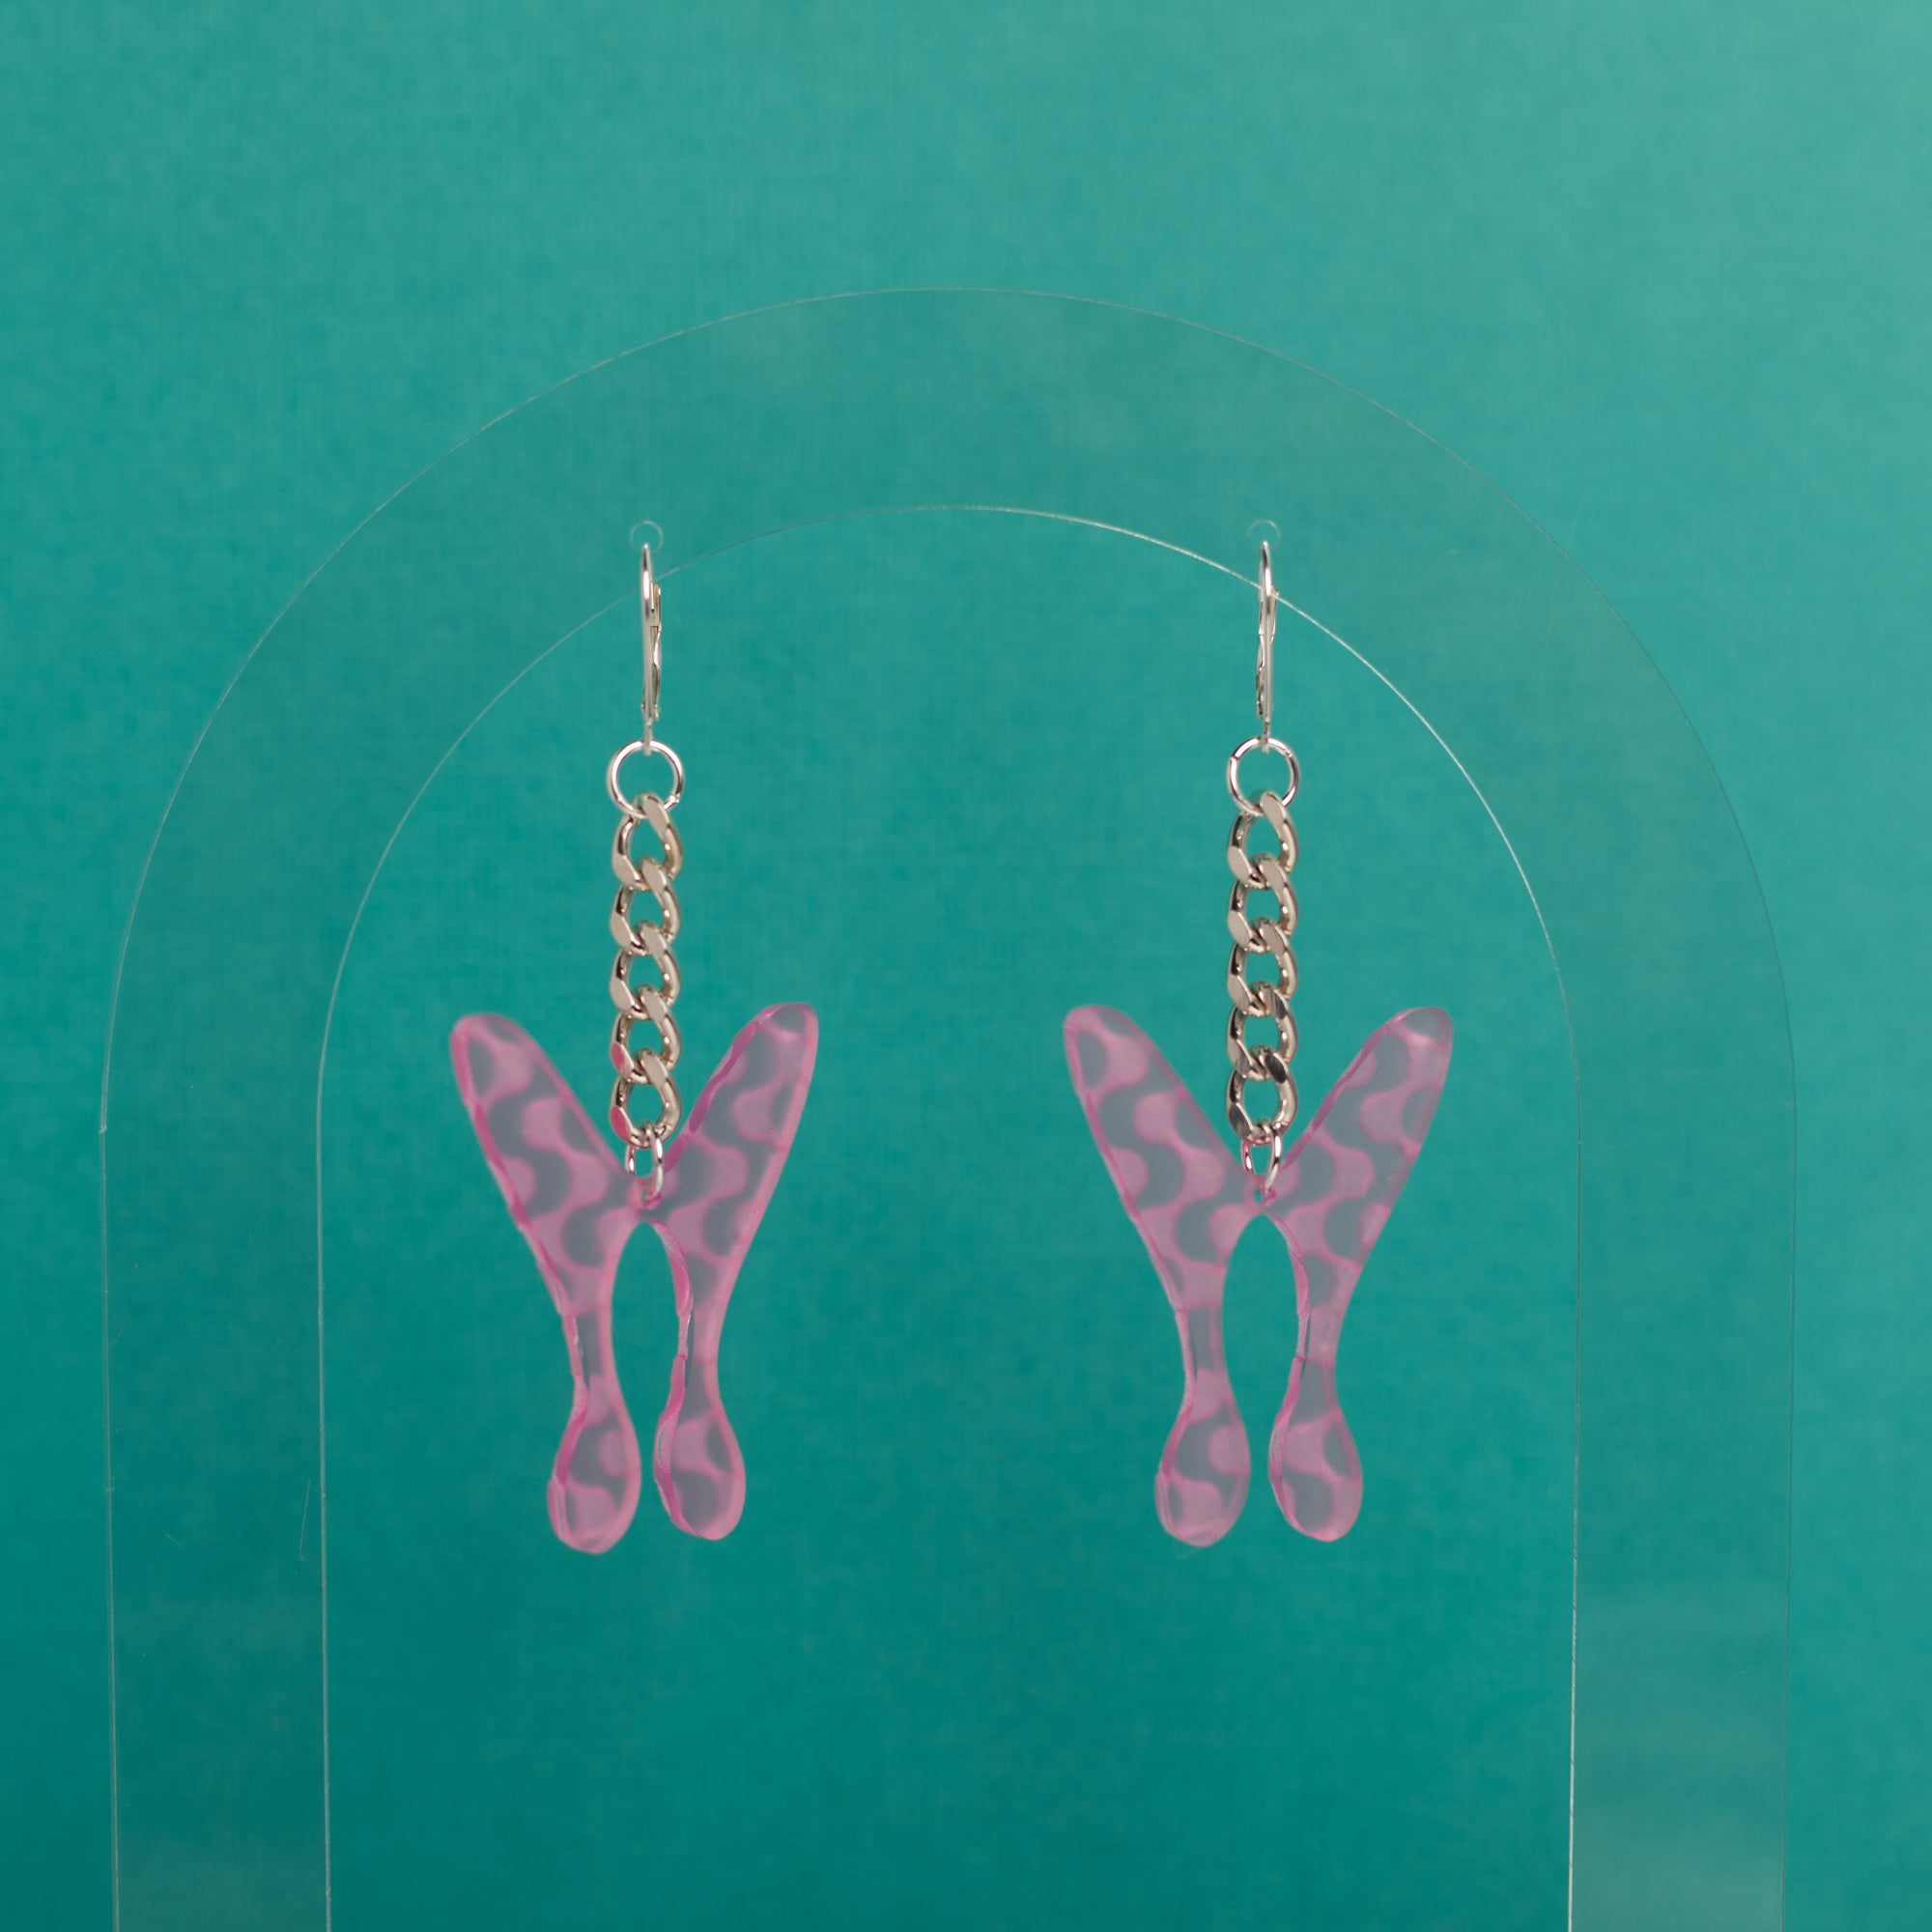 The Wavy Nova Butterfly Chain Earrings